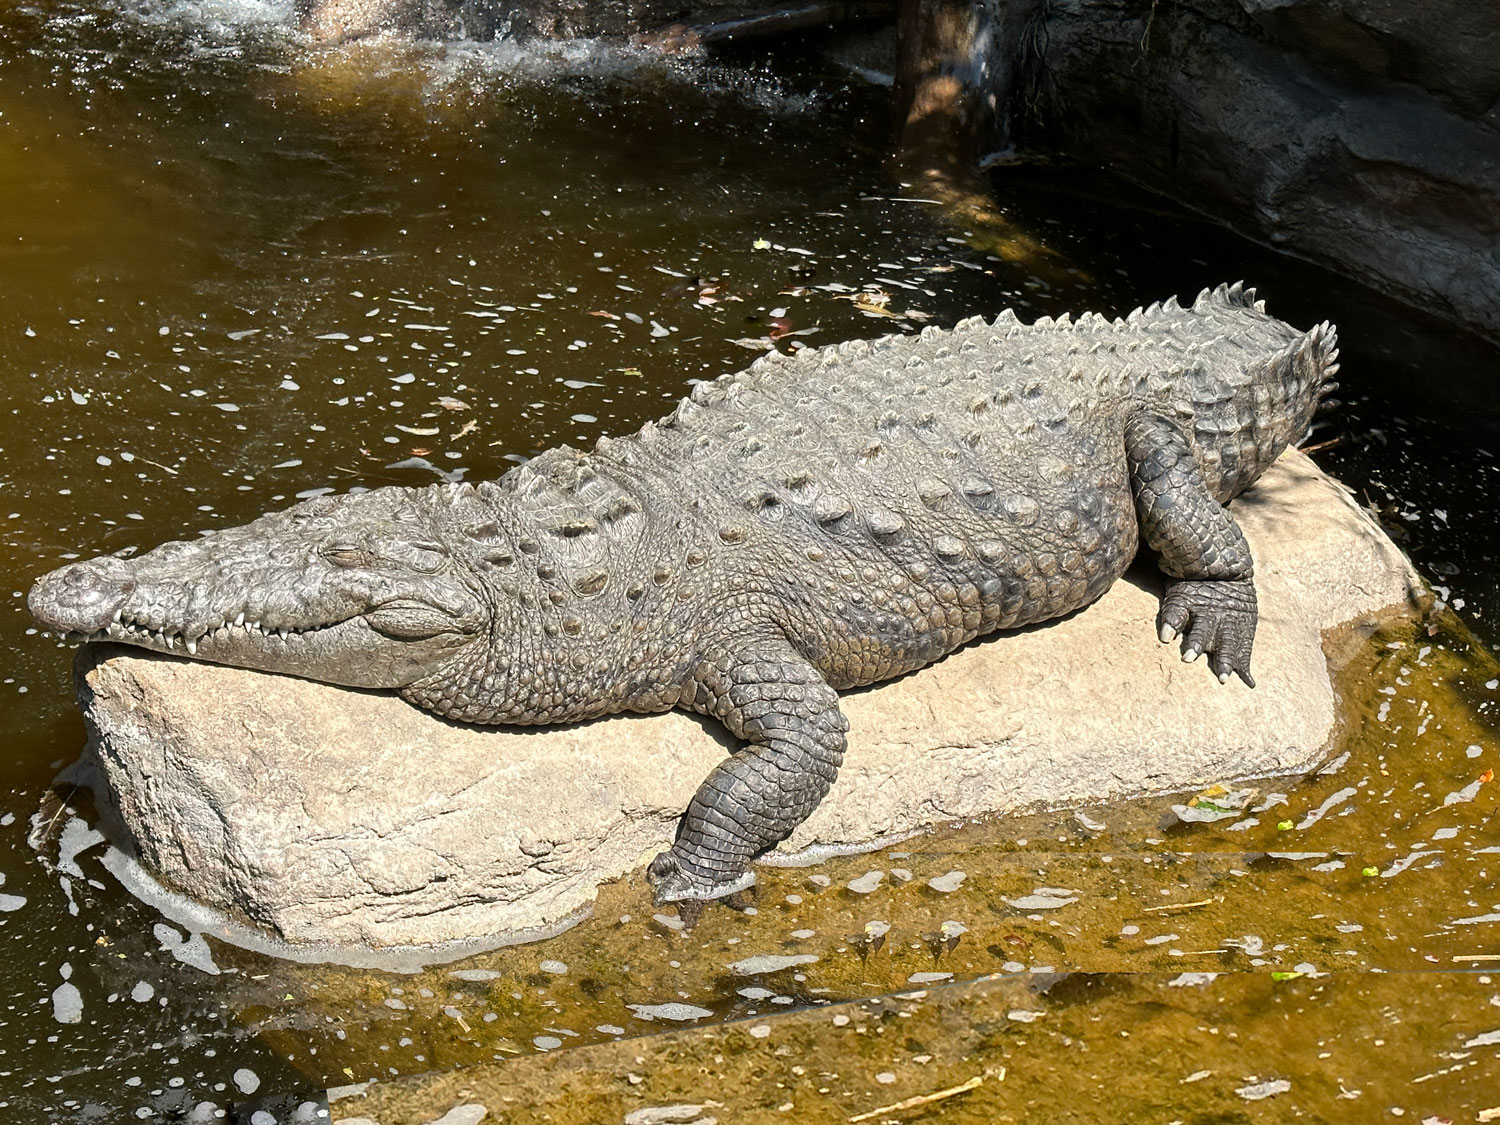 crocodile-native-to-Guatemala-Parque-Zoologico-La-Aurora-iPhone-14-Pro-Max-Nicholas-Hellmuth-FLAAR-Photo-Archive-Feb-23-2023-3698-Norma